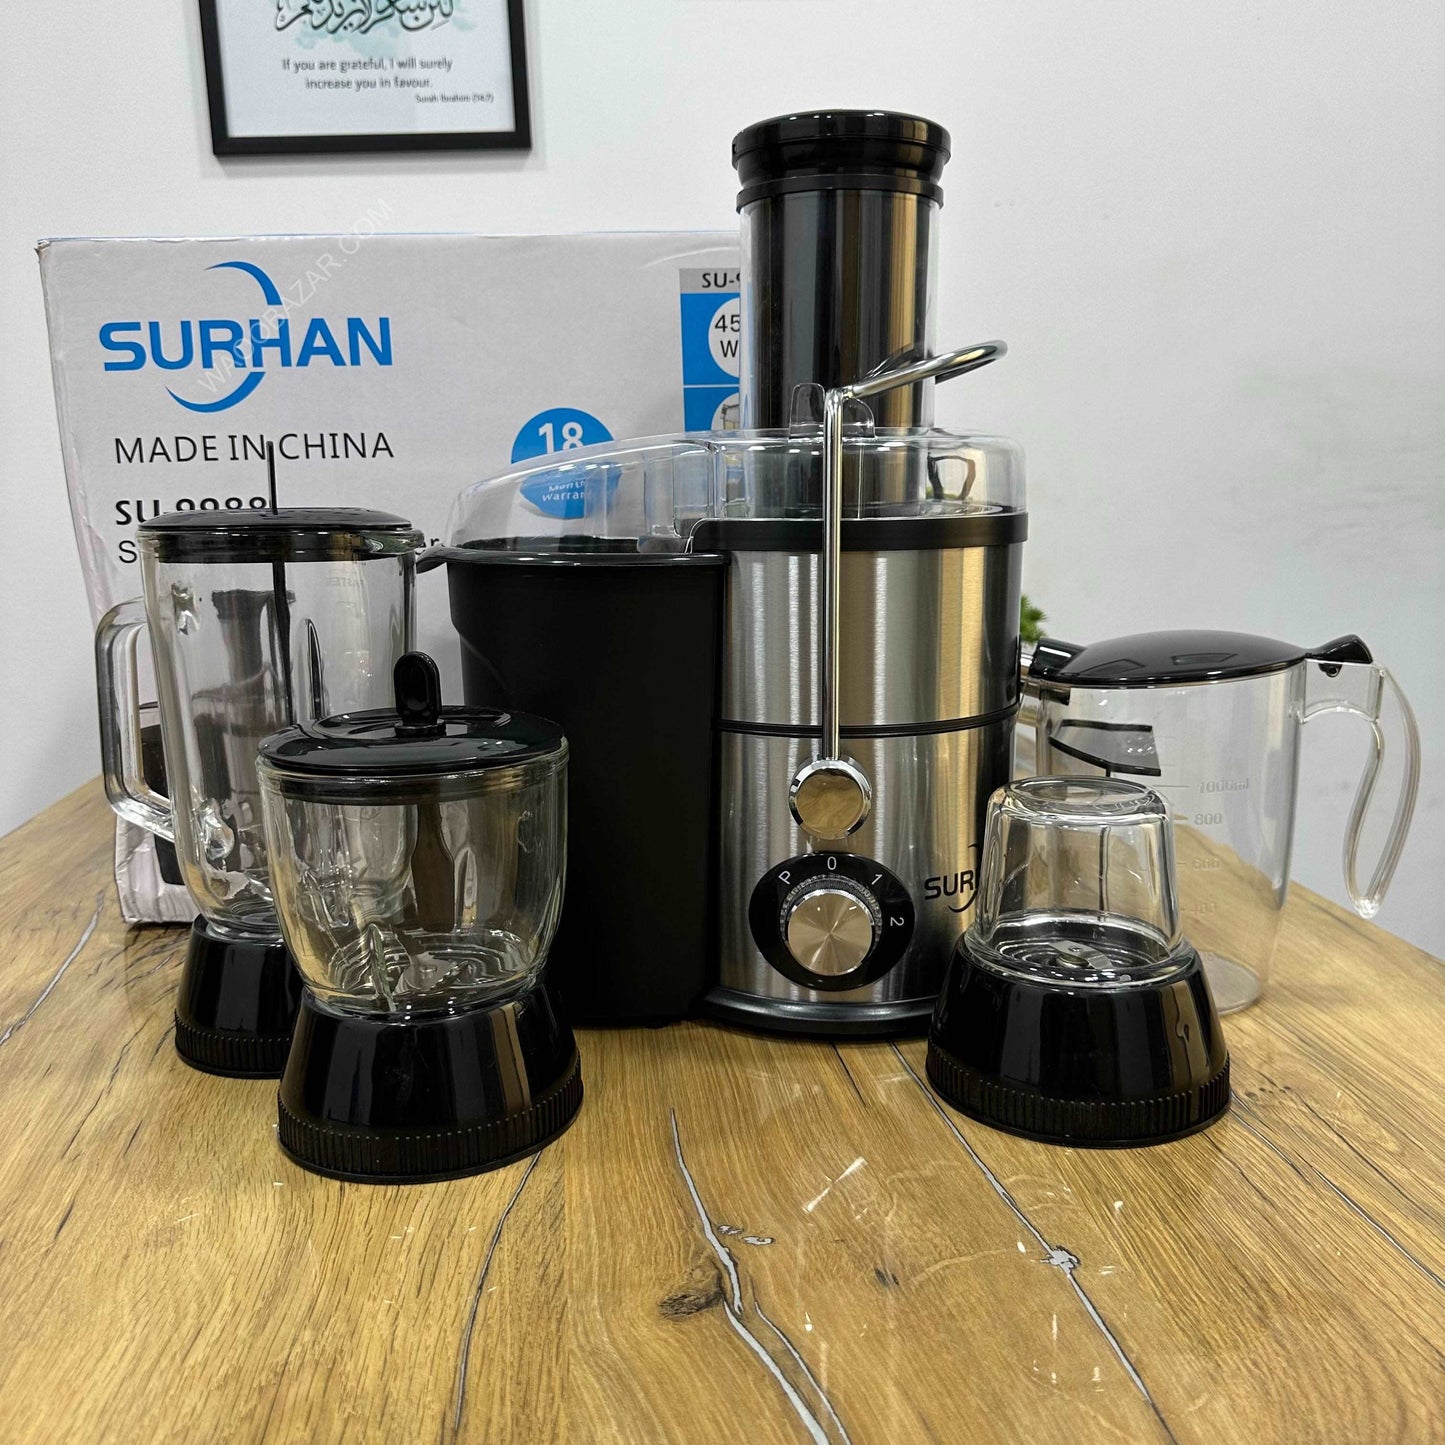 Surhan 4 in 1 Food Processor Juicer, Blender, Grinder and chopper | 4500W